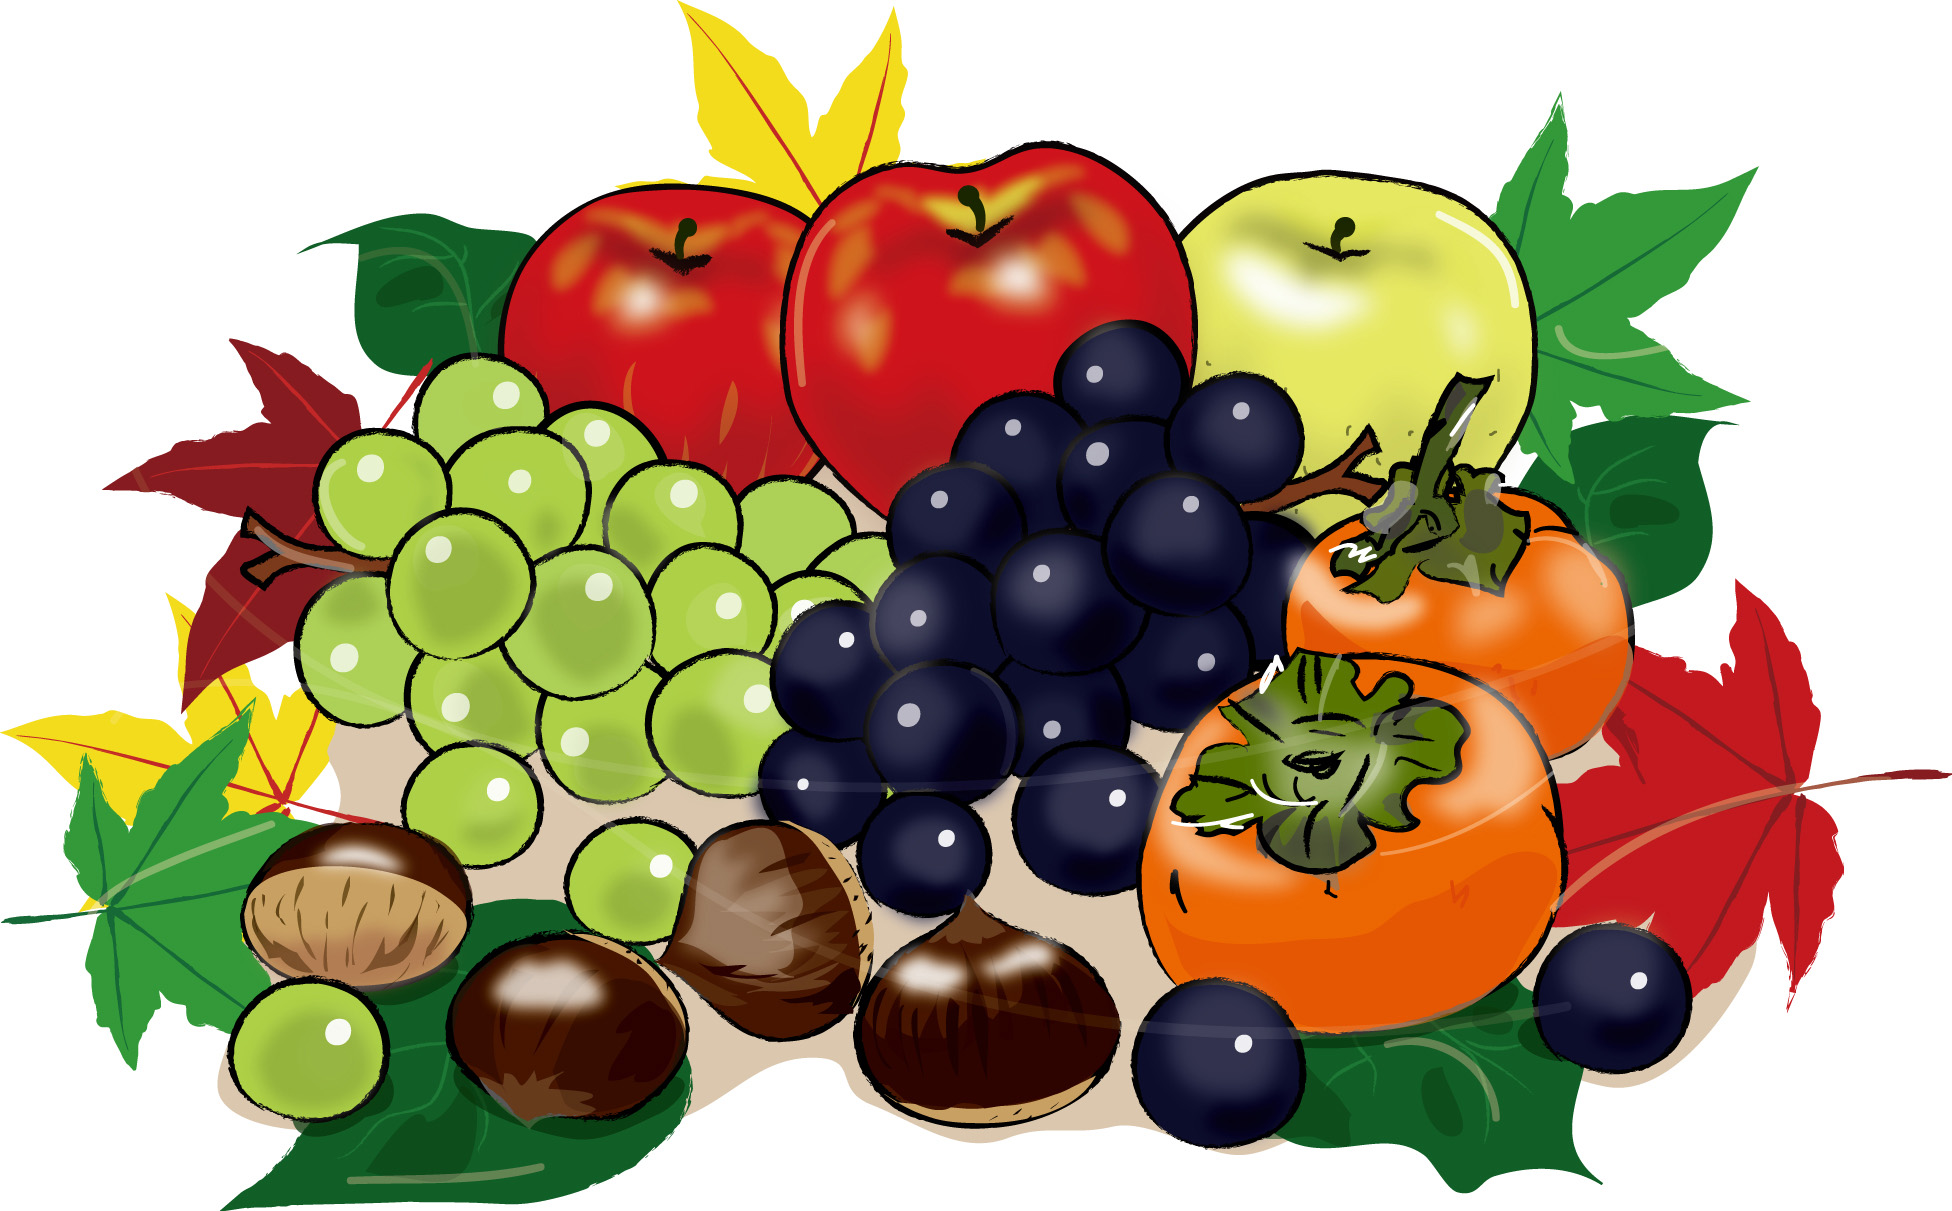 秋の印刷用イラスト素材 秋 食べ物の素材 秋の果物1 ダウンロード